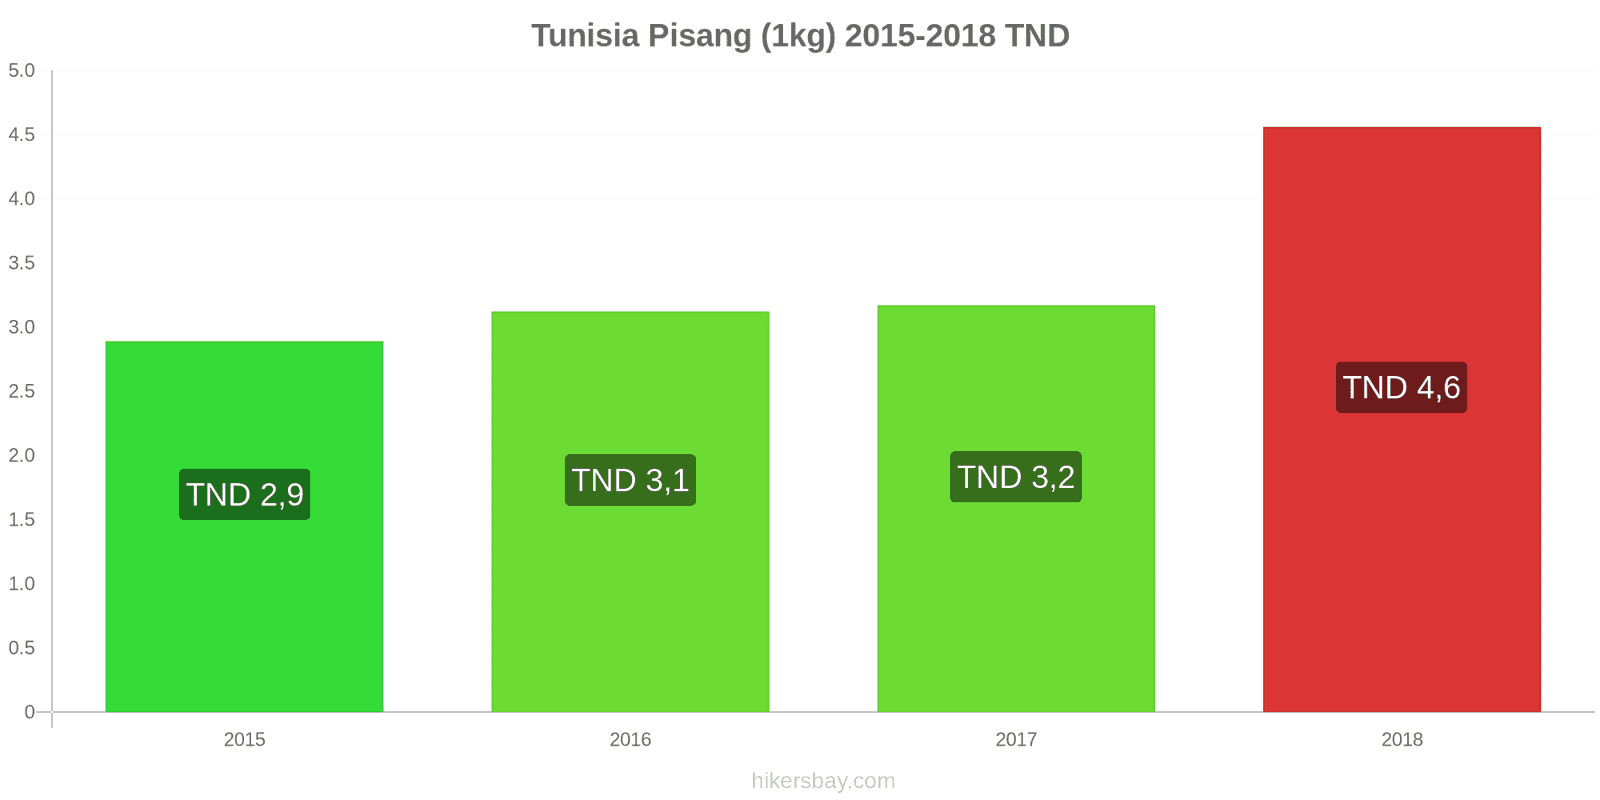 Tunisia perubahan harga Pisang (1kg) hikersbay.com